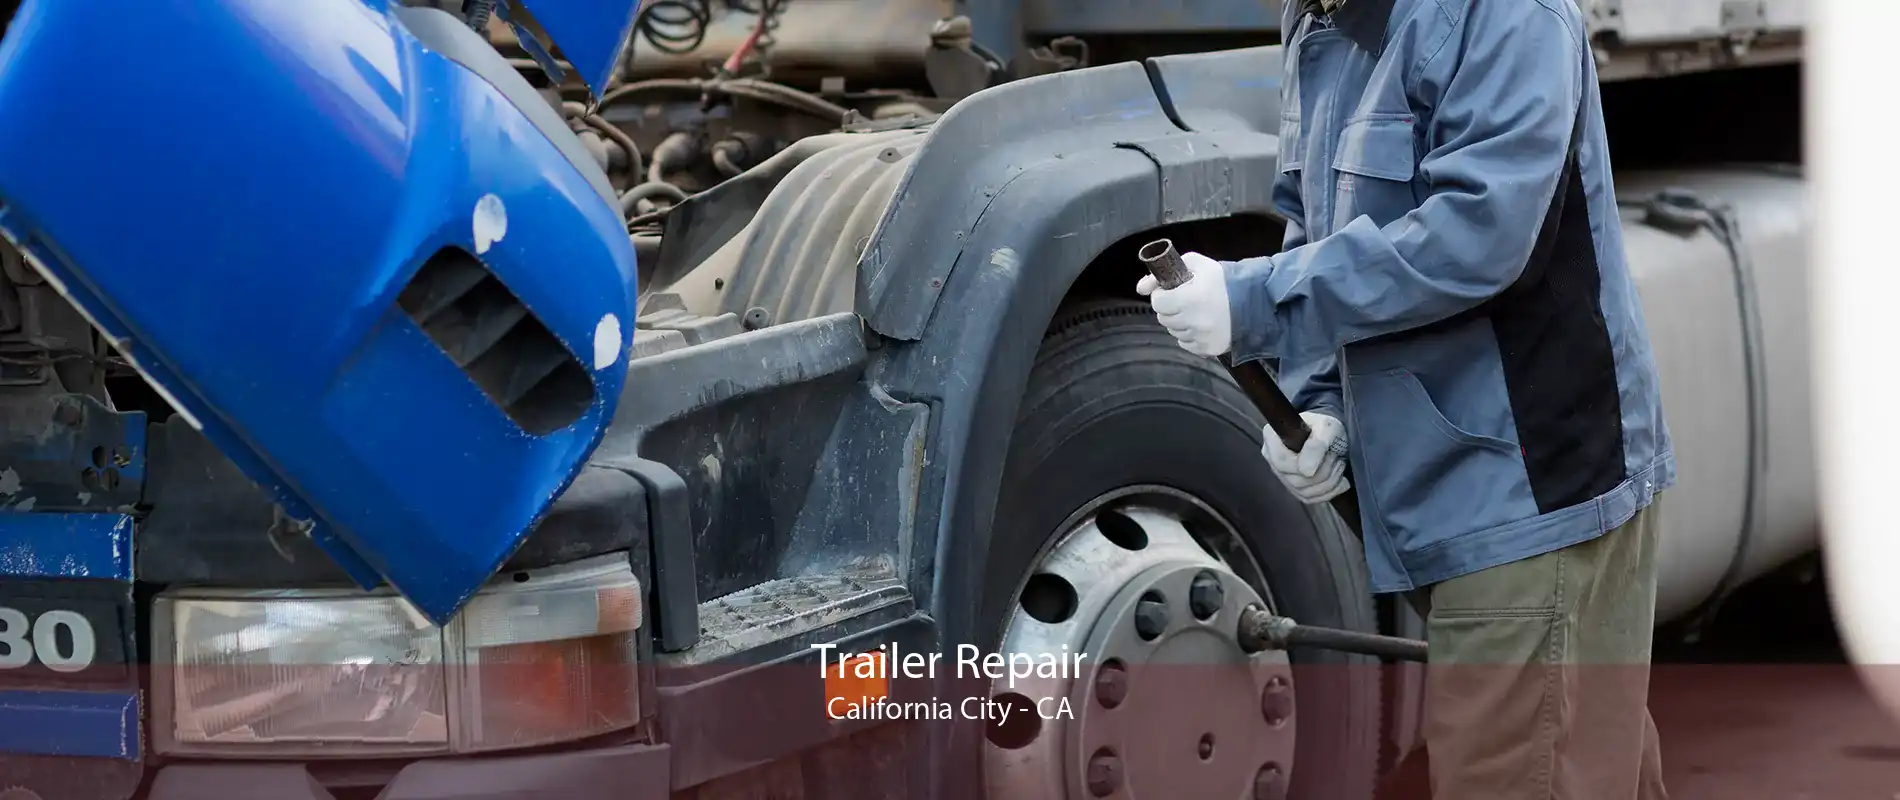 Trailer Repair California City - CA